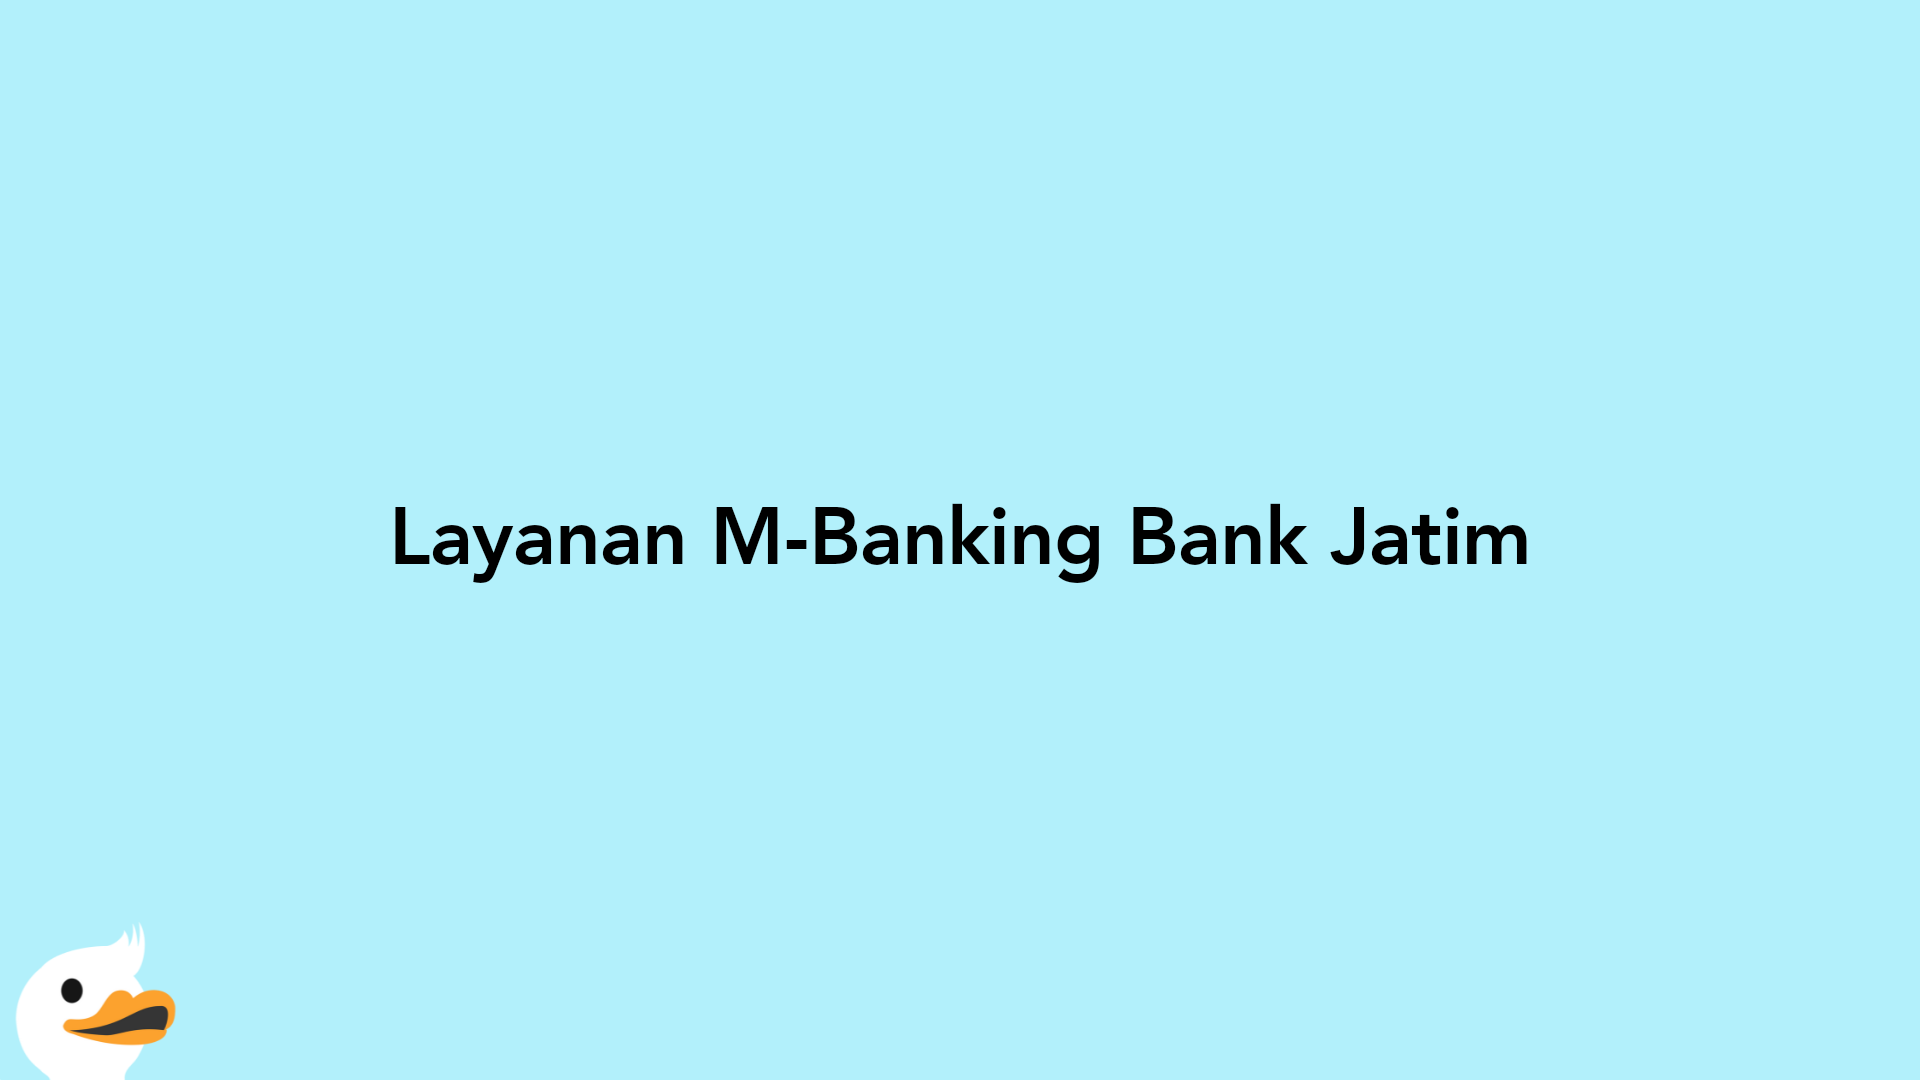 Layanan M-Banking Bank Jatim